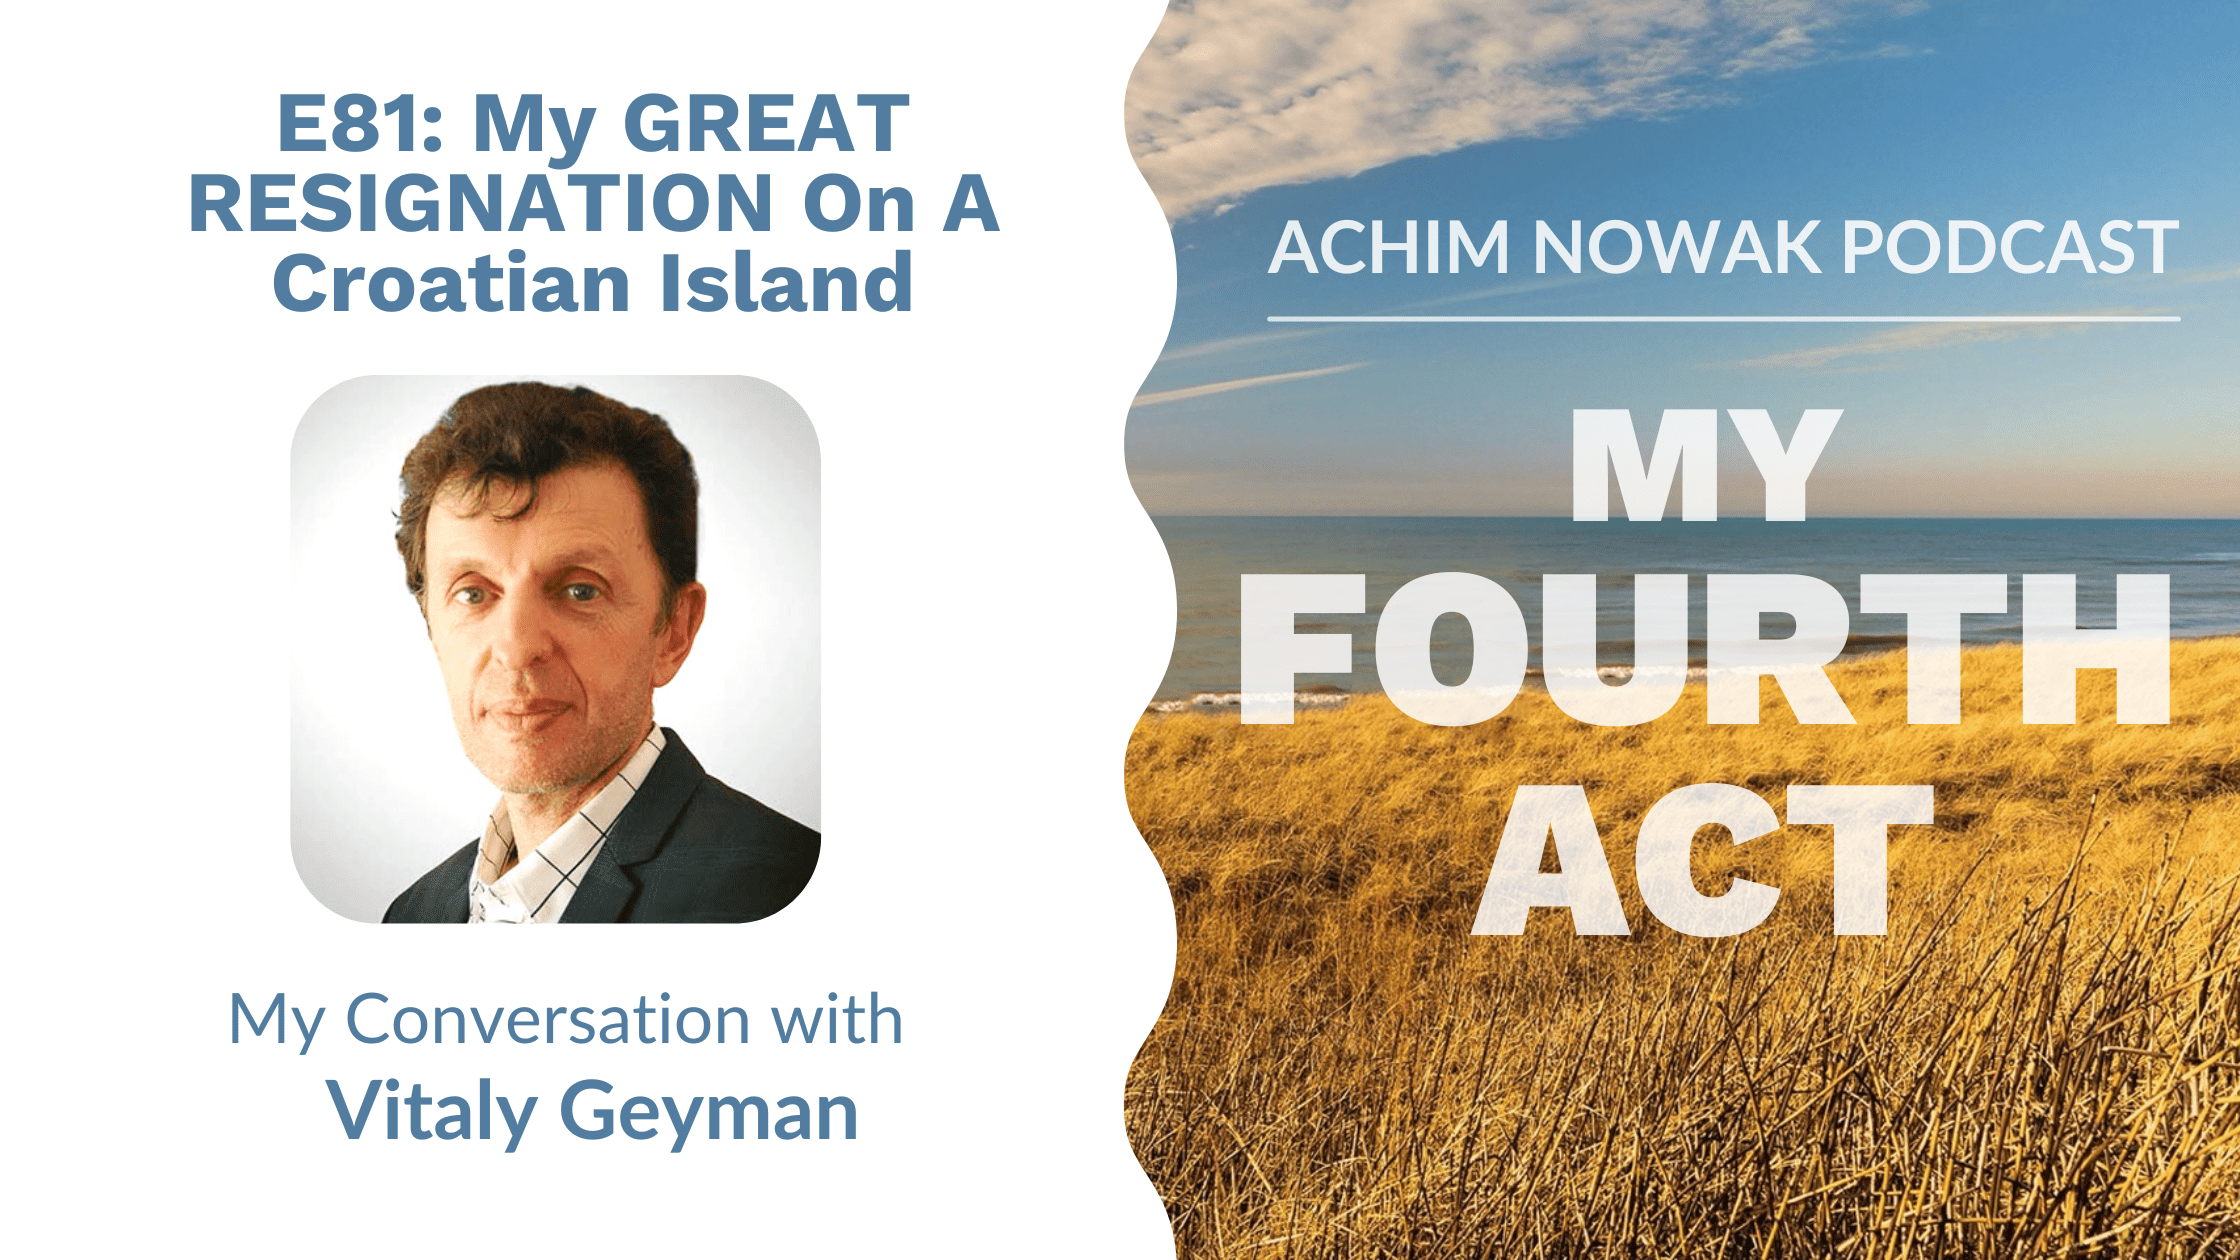 E81 | Vitaly Geyman | My GREAT RESIGNATION On A Croatian Island